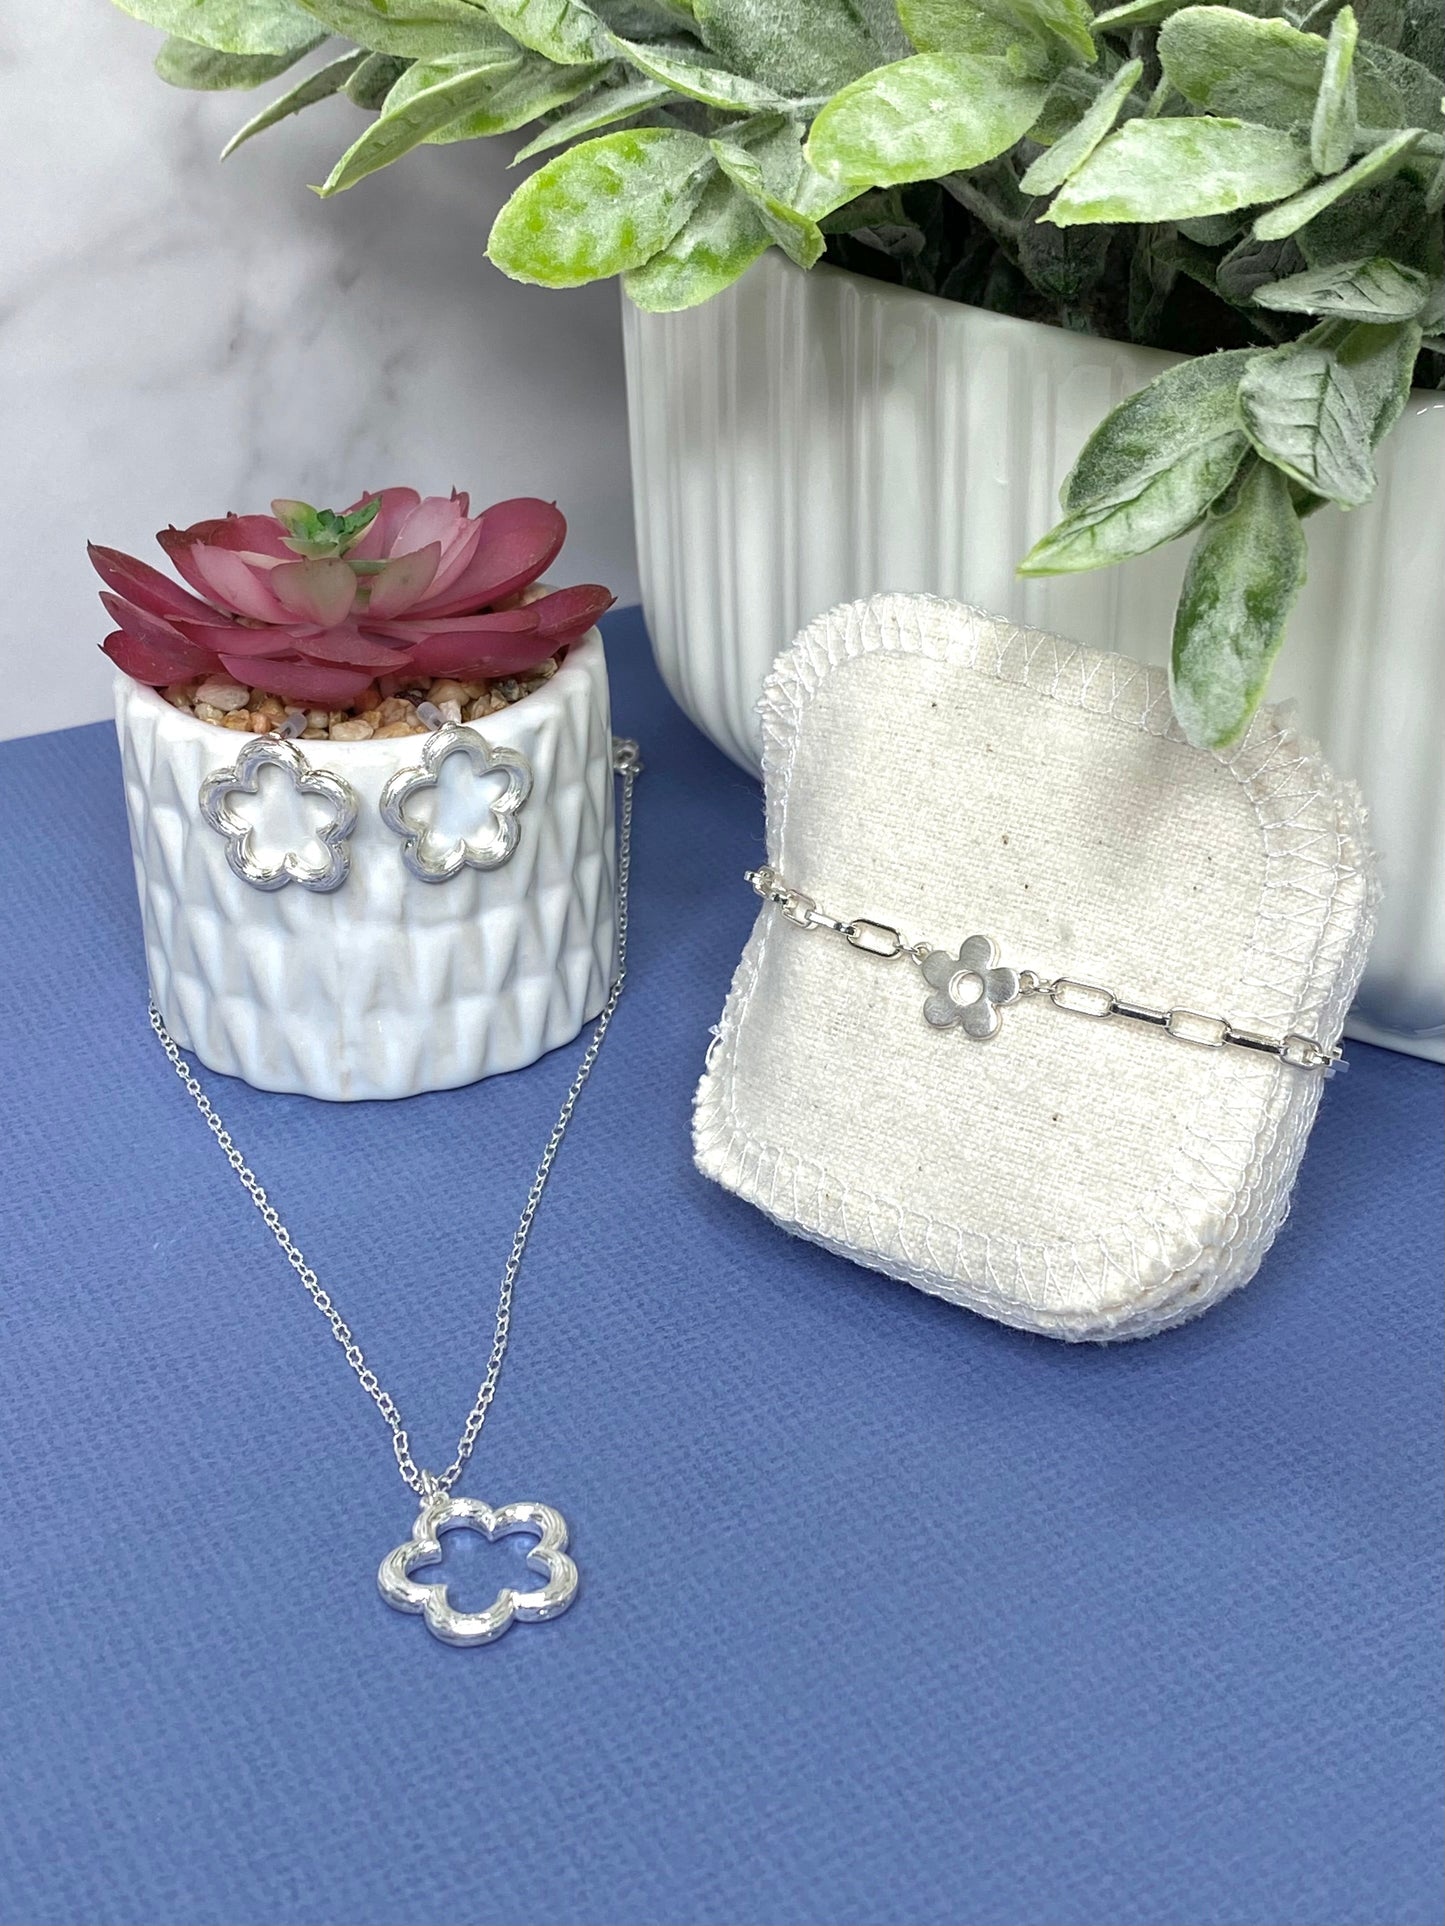 Flower Chain Bracelet in Silver